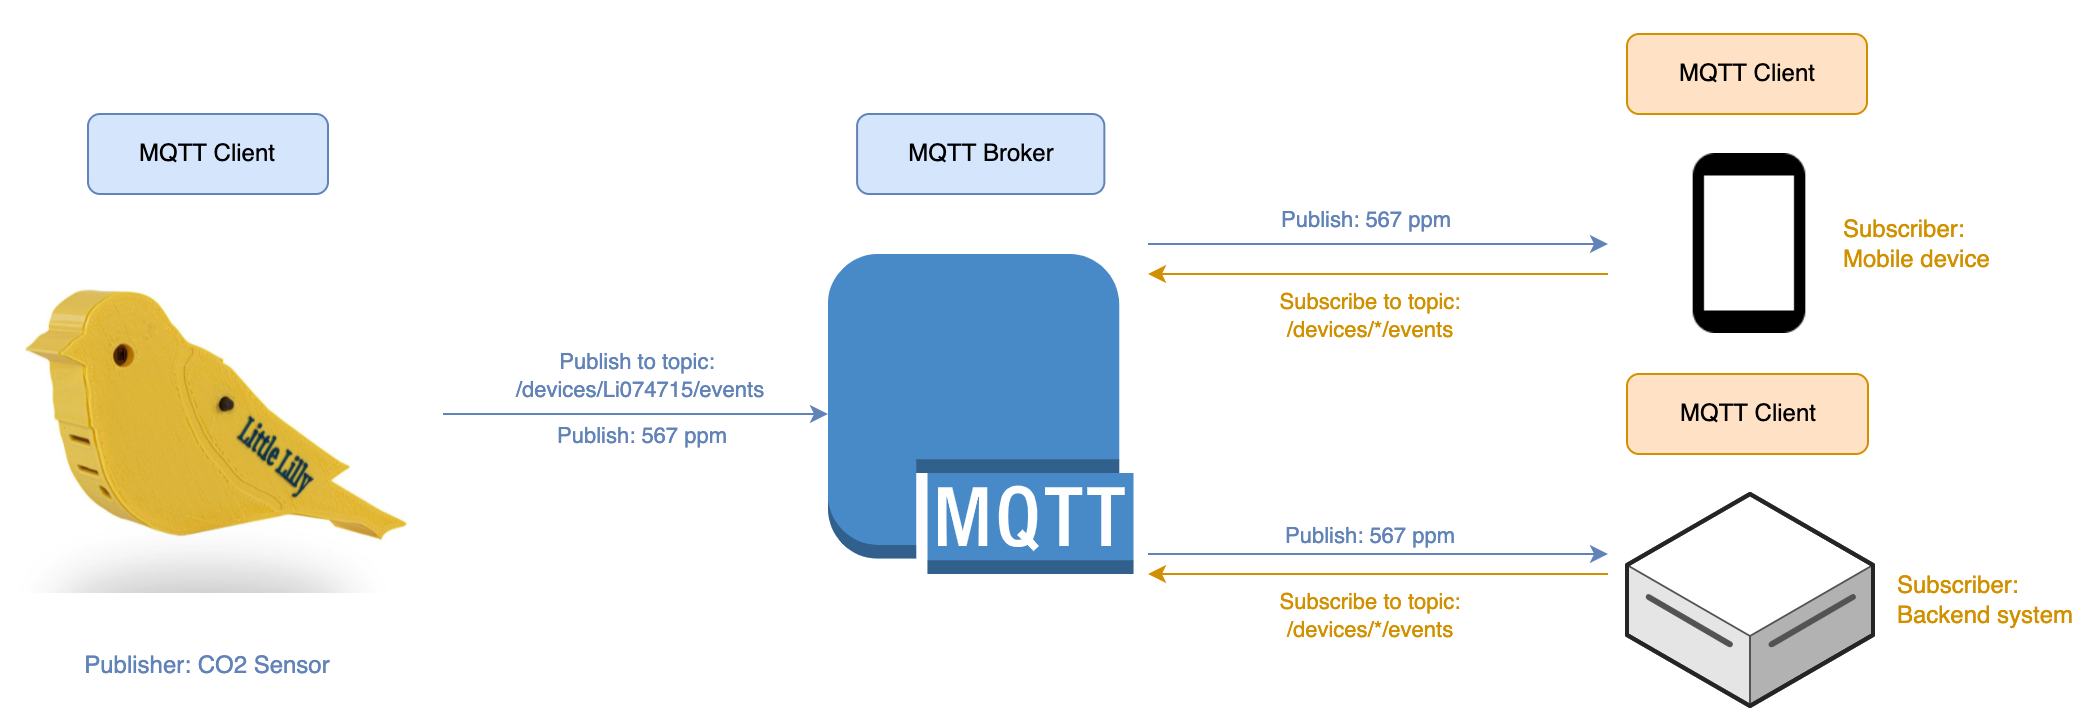 Schema dat laat zien hoe MQTT clients en brokers interageren om data te publiceren en te onttrekken